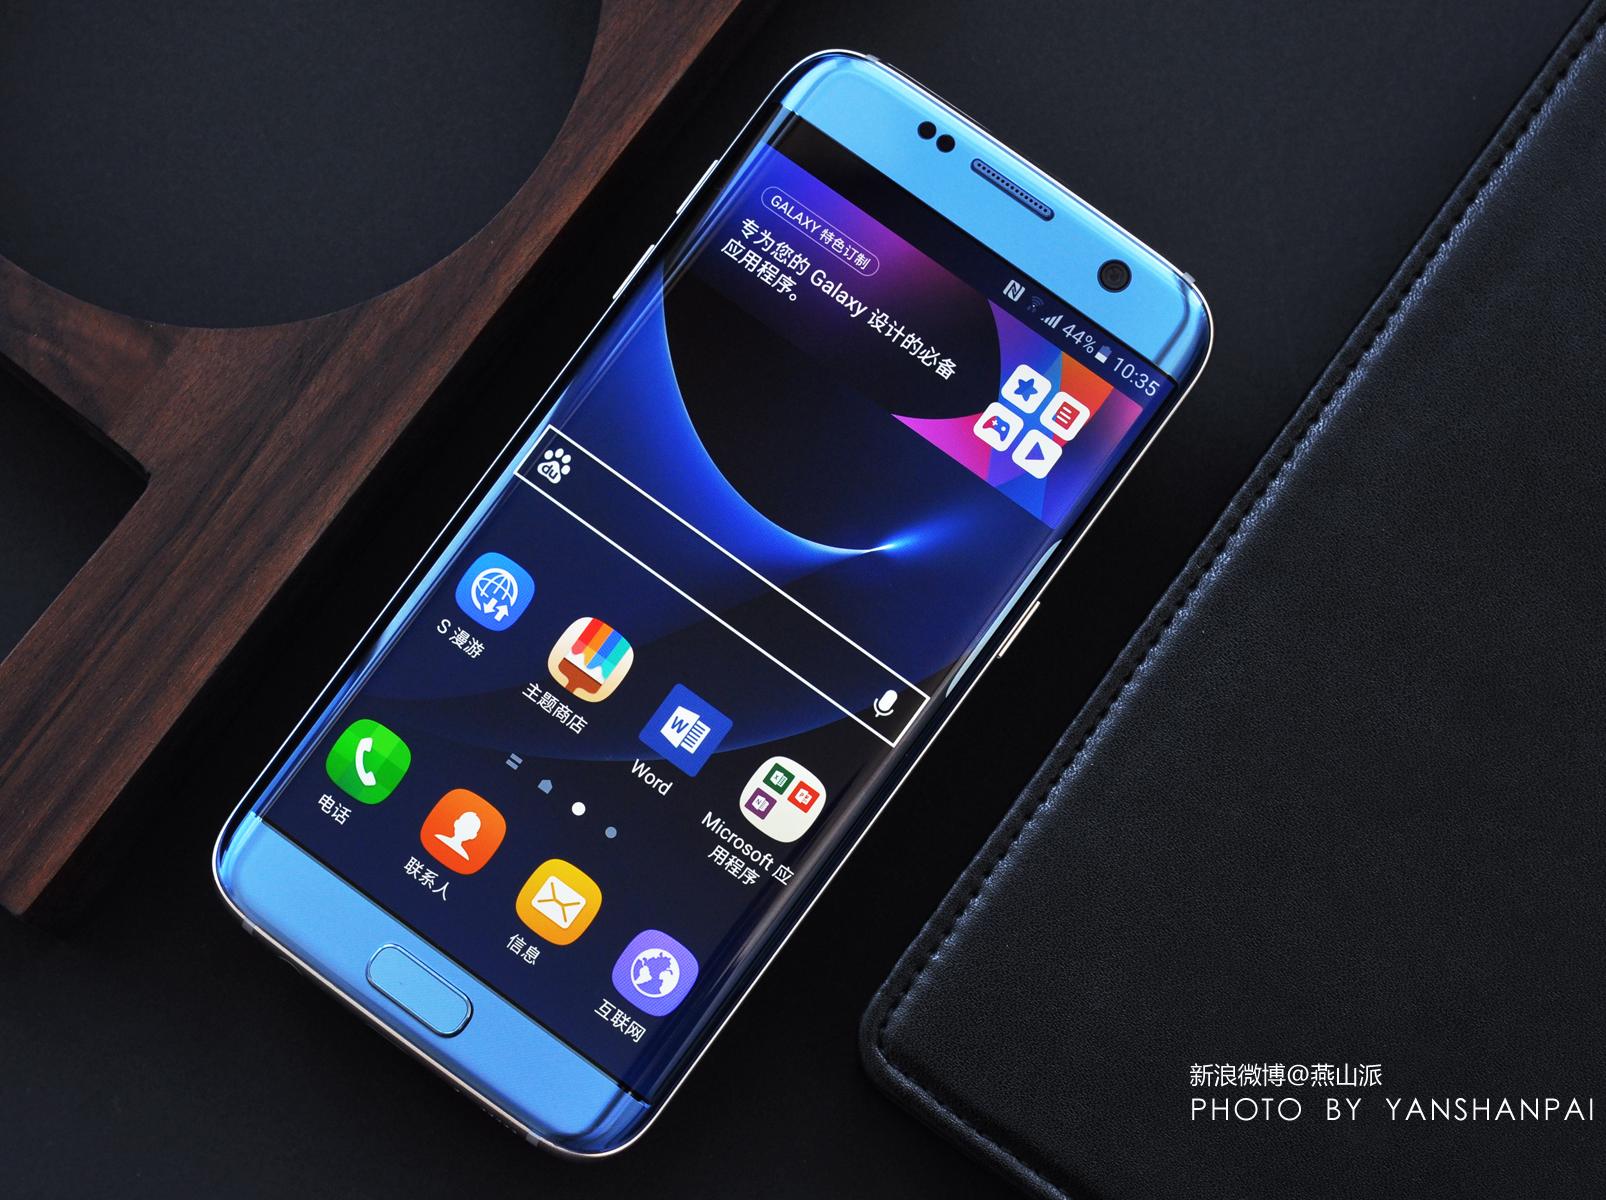 图说珊瑚蓝版三星Galaxy S7 edge,依然最美曲